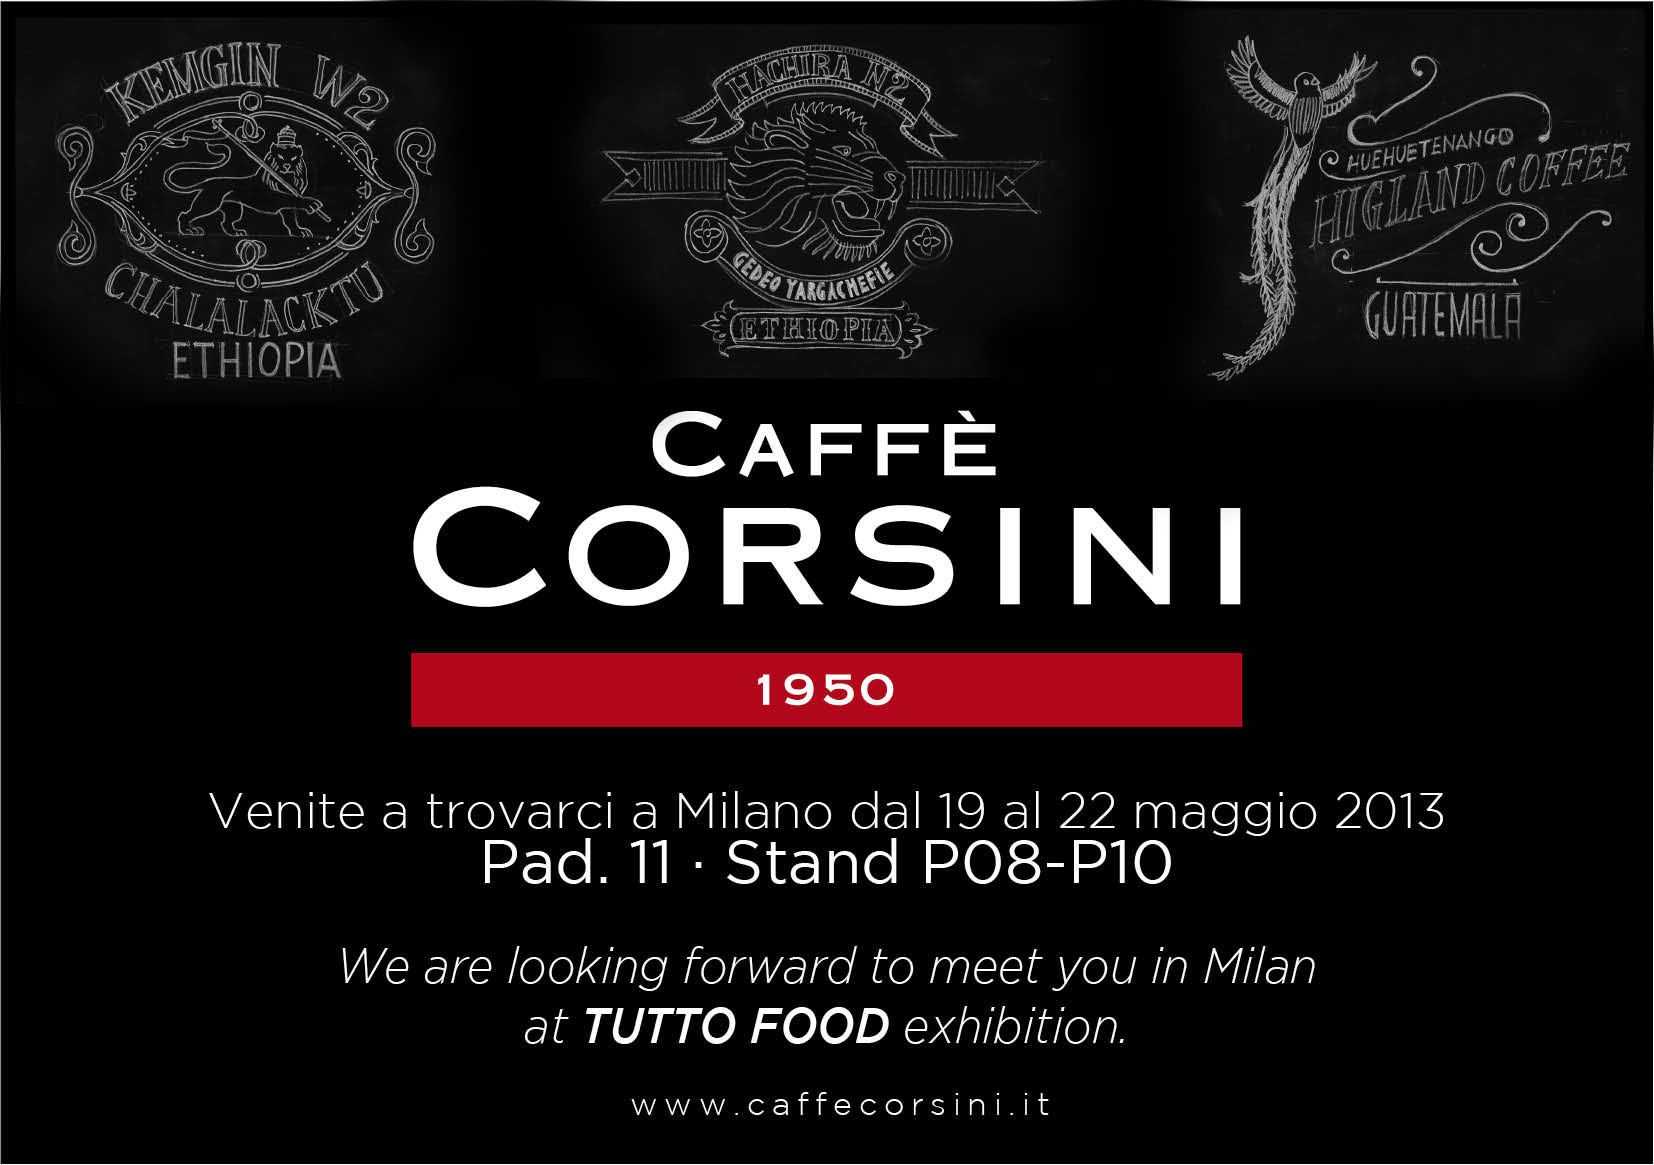 La locandina caffè Corsini per Tuttofood